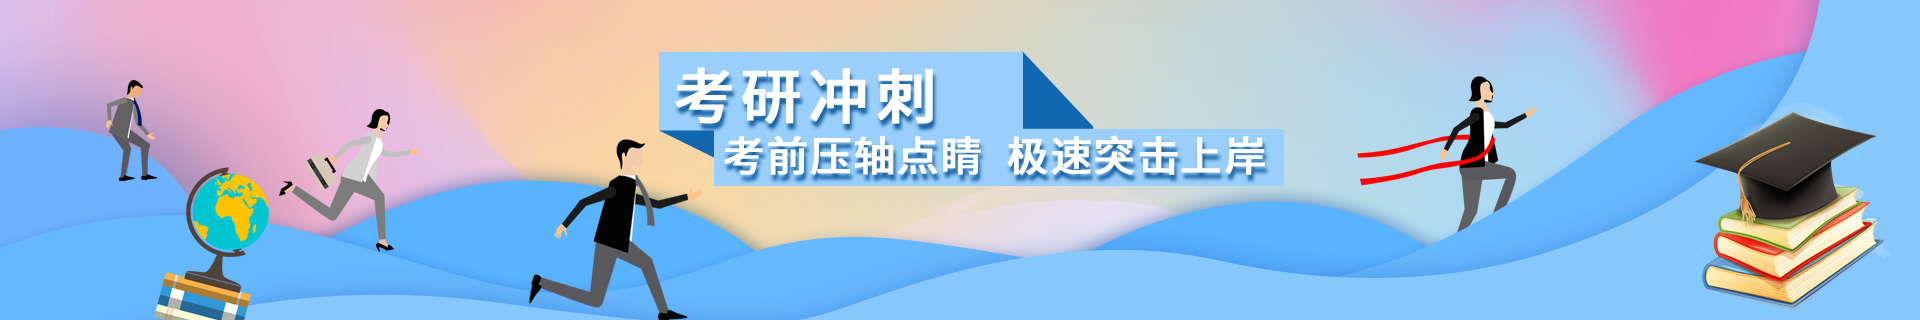 上海松江跨考教育培训机构